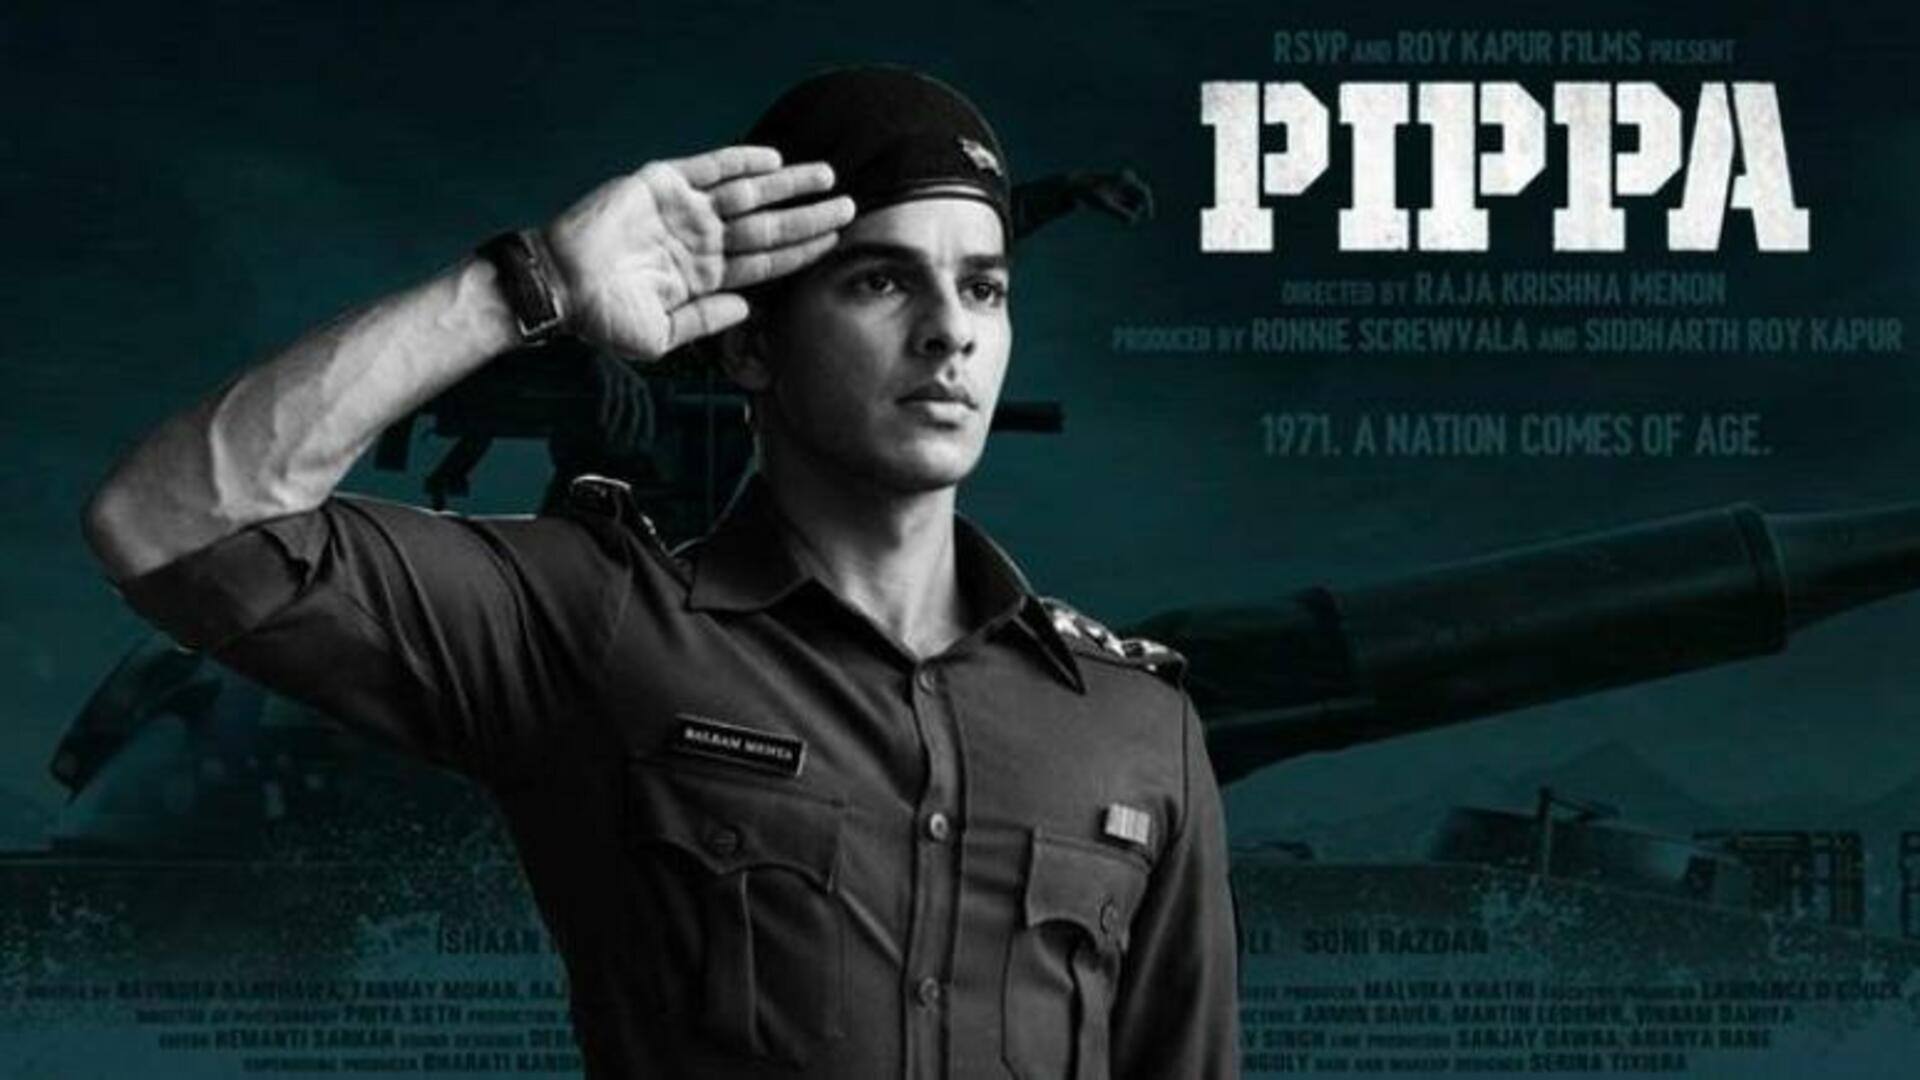 ईशान खट्टर की 'पिप्पा' सीधे OTT पर नहीं होगी रिलीज, निर्माताओं ने जारी किया बयान 